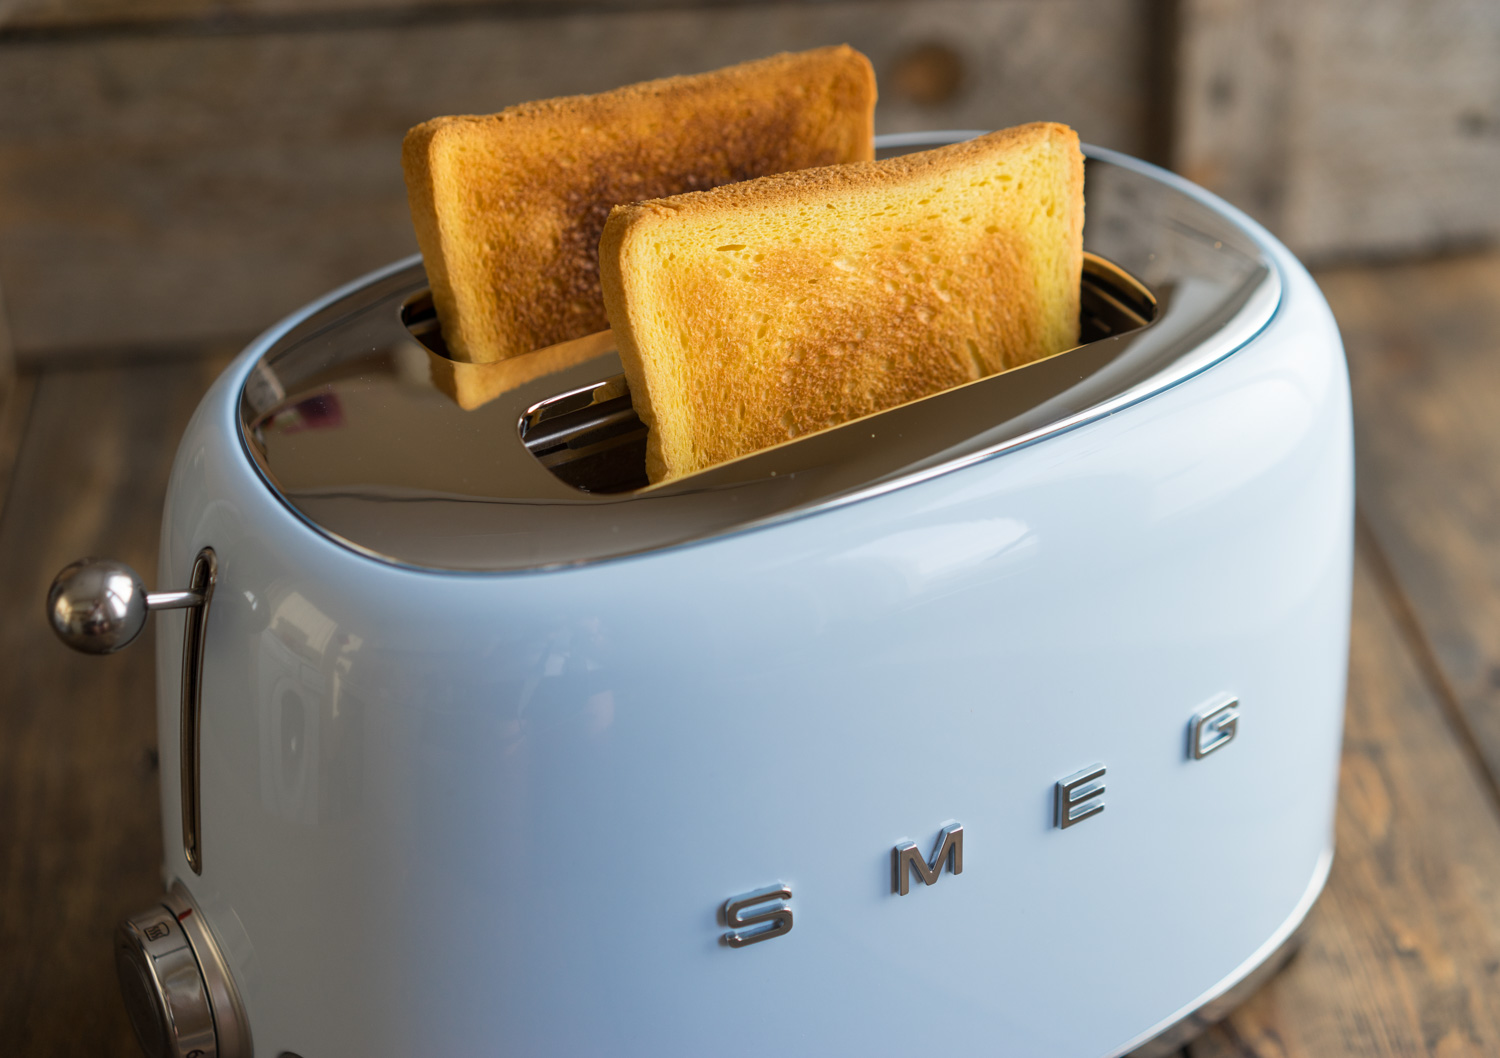 Ремонт тостера своими руками в домашних условиях, варианты поломок.